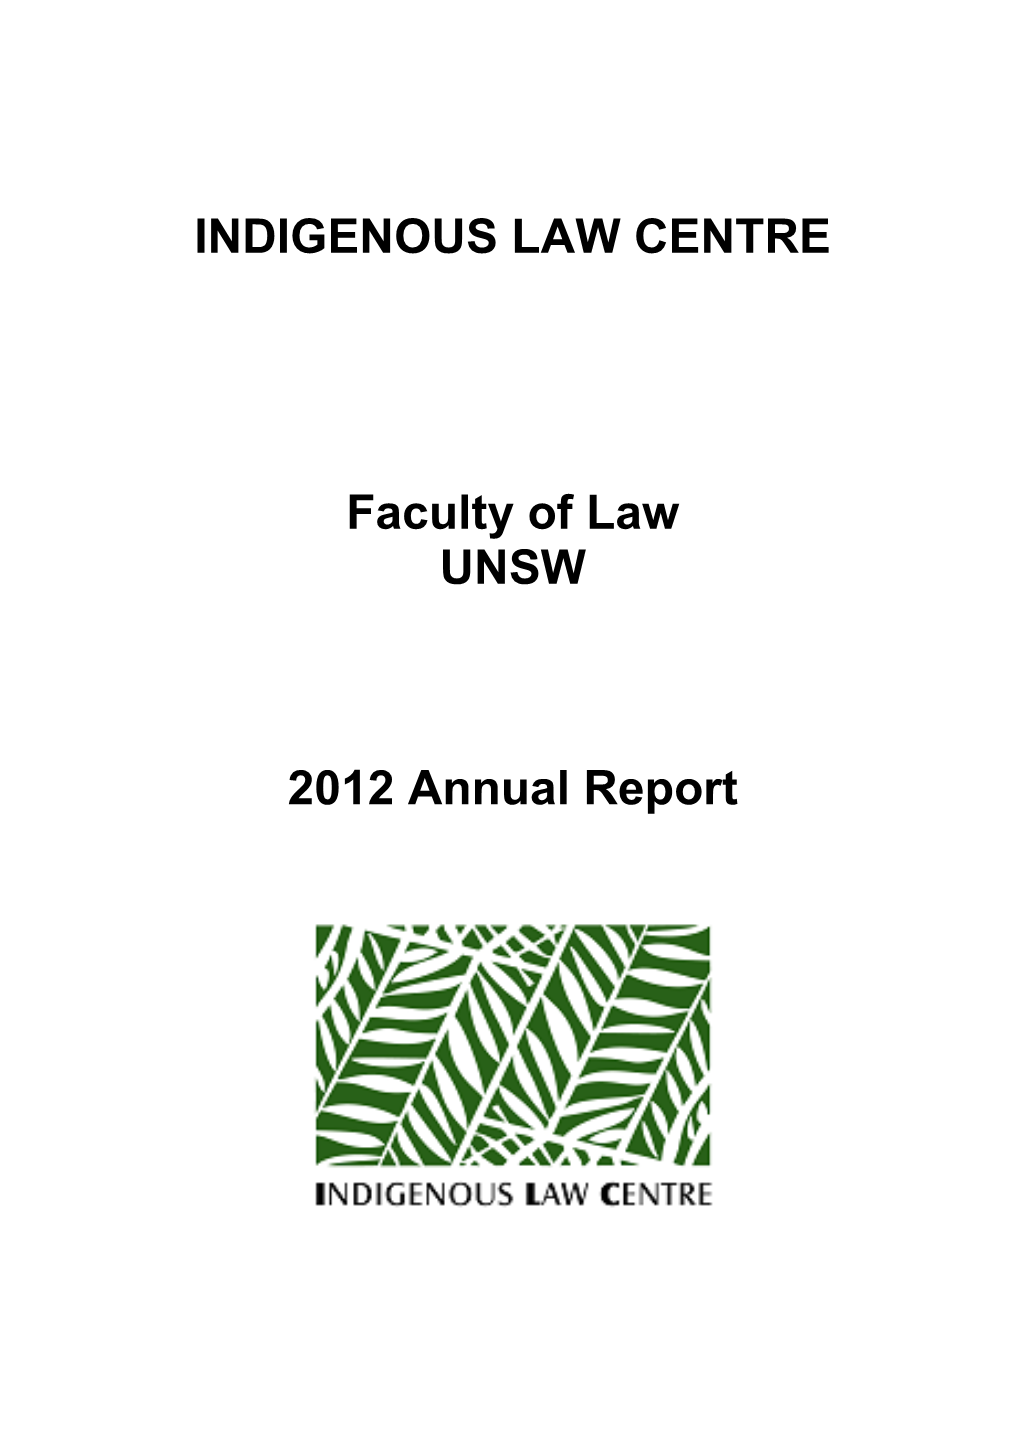 ILC Annual Report 2012